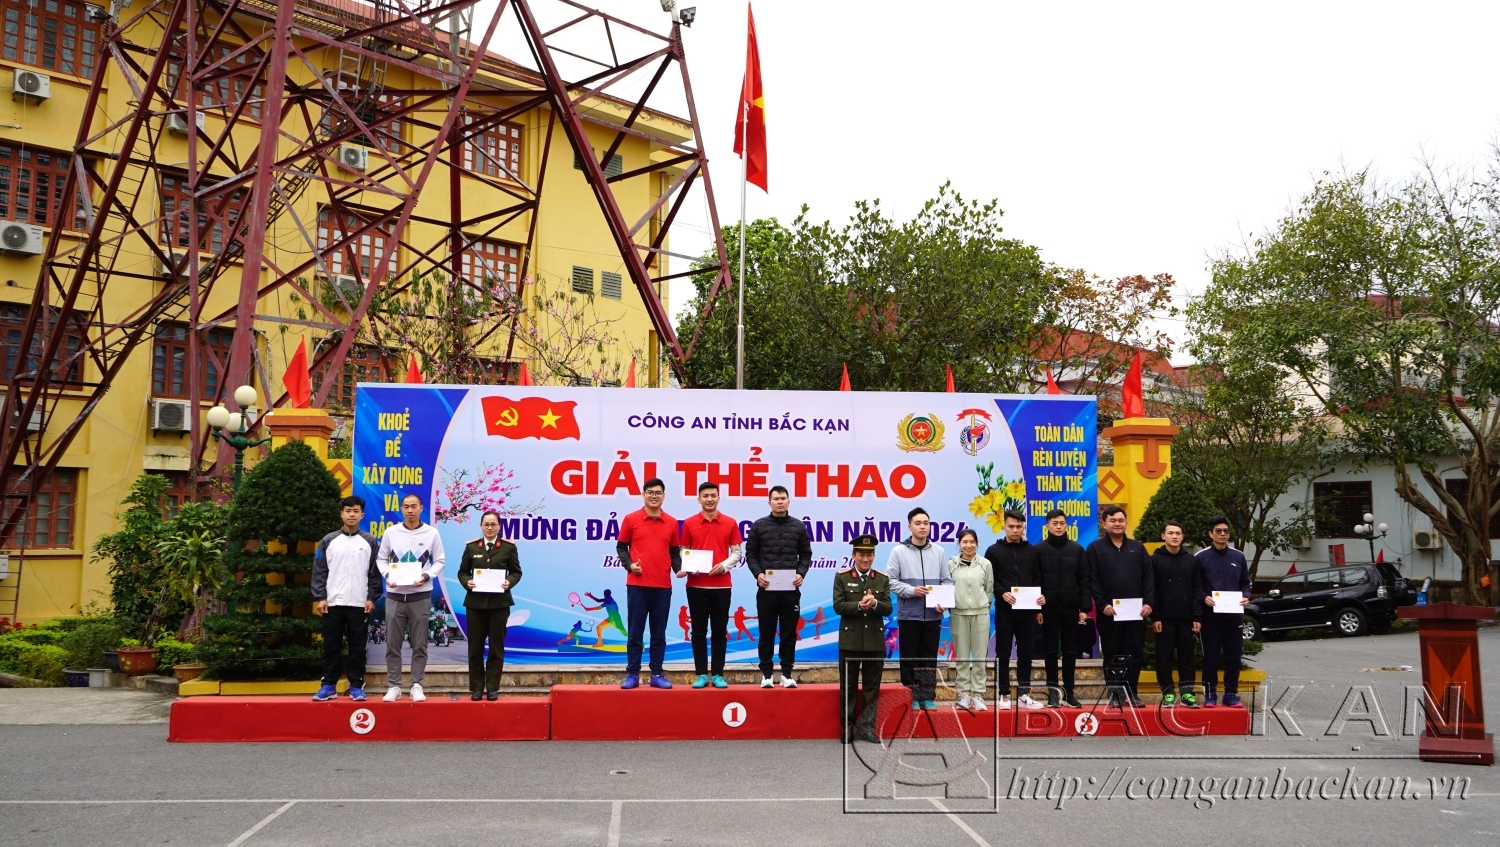 Đại tá Hà Trọng Trung – Phó Giám đốc Công an tỉnh Trao giải cho các đôi vận động viên thi đấu ở môn Cầu lông